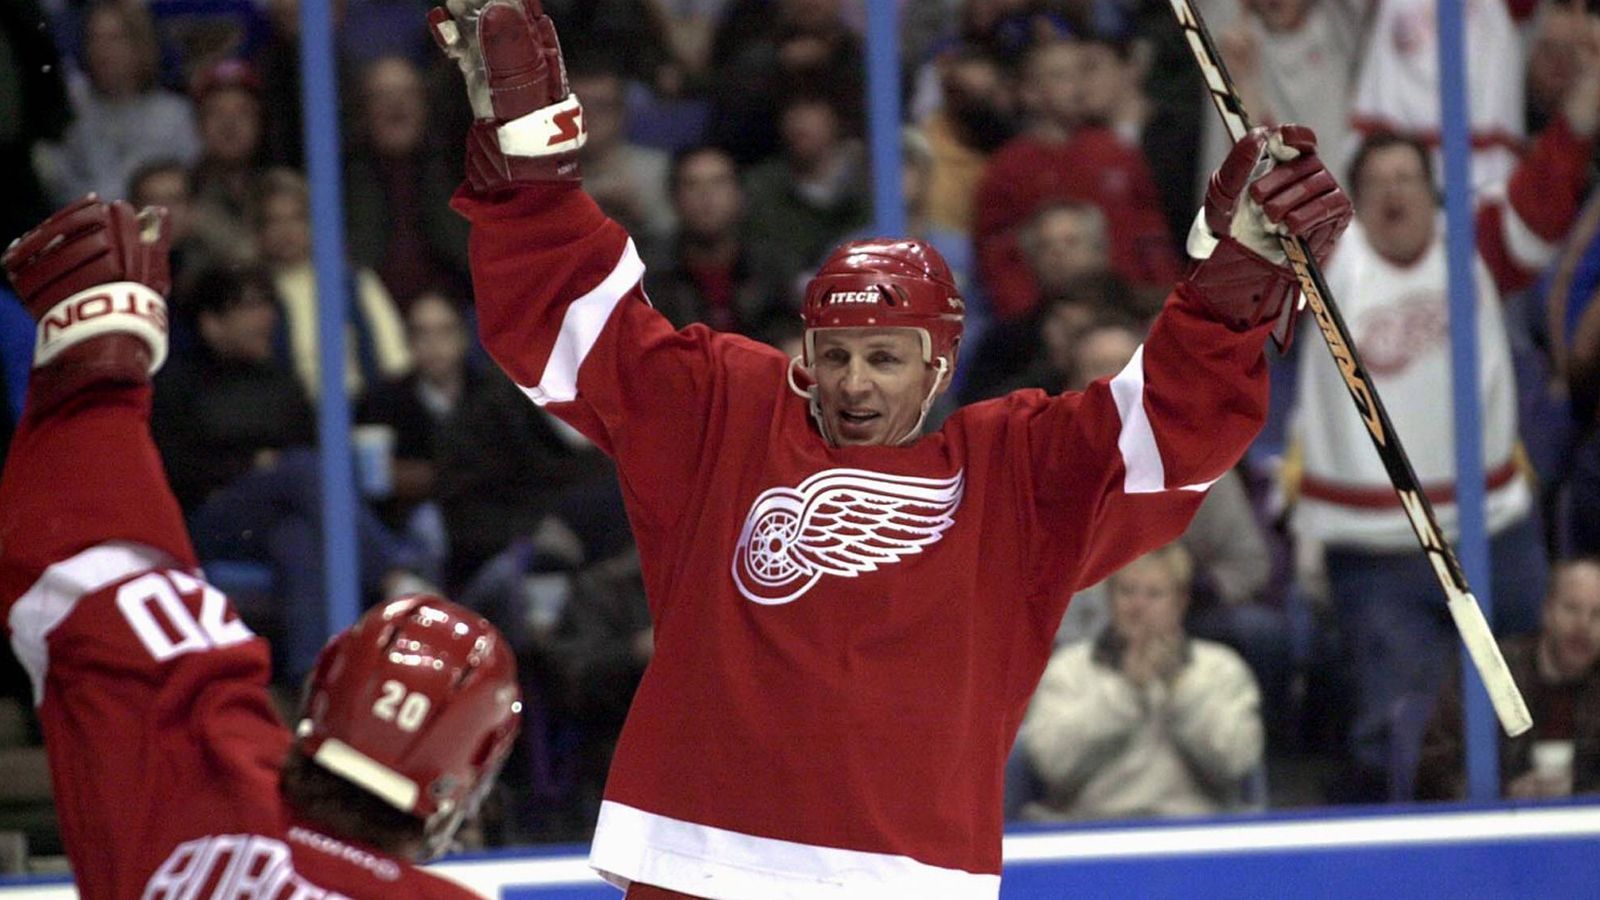 
                <strong>Platz 10: Igor Larionov</strong><br>
                &#x2022; Alter beim letzten NHL-Spiel: 43 Jahre, 129 Tage -<br>&#x2022; Letztes NHL-Spiel im Jahre 2004<br>
              